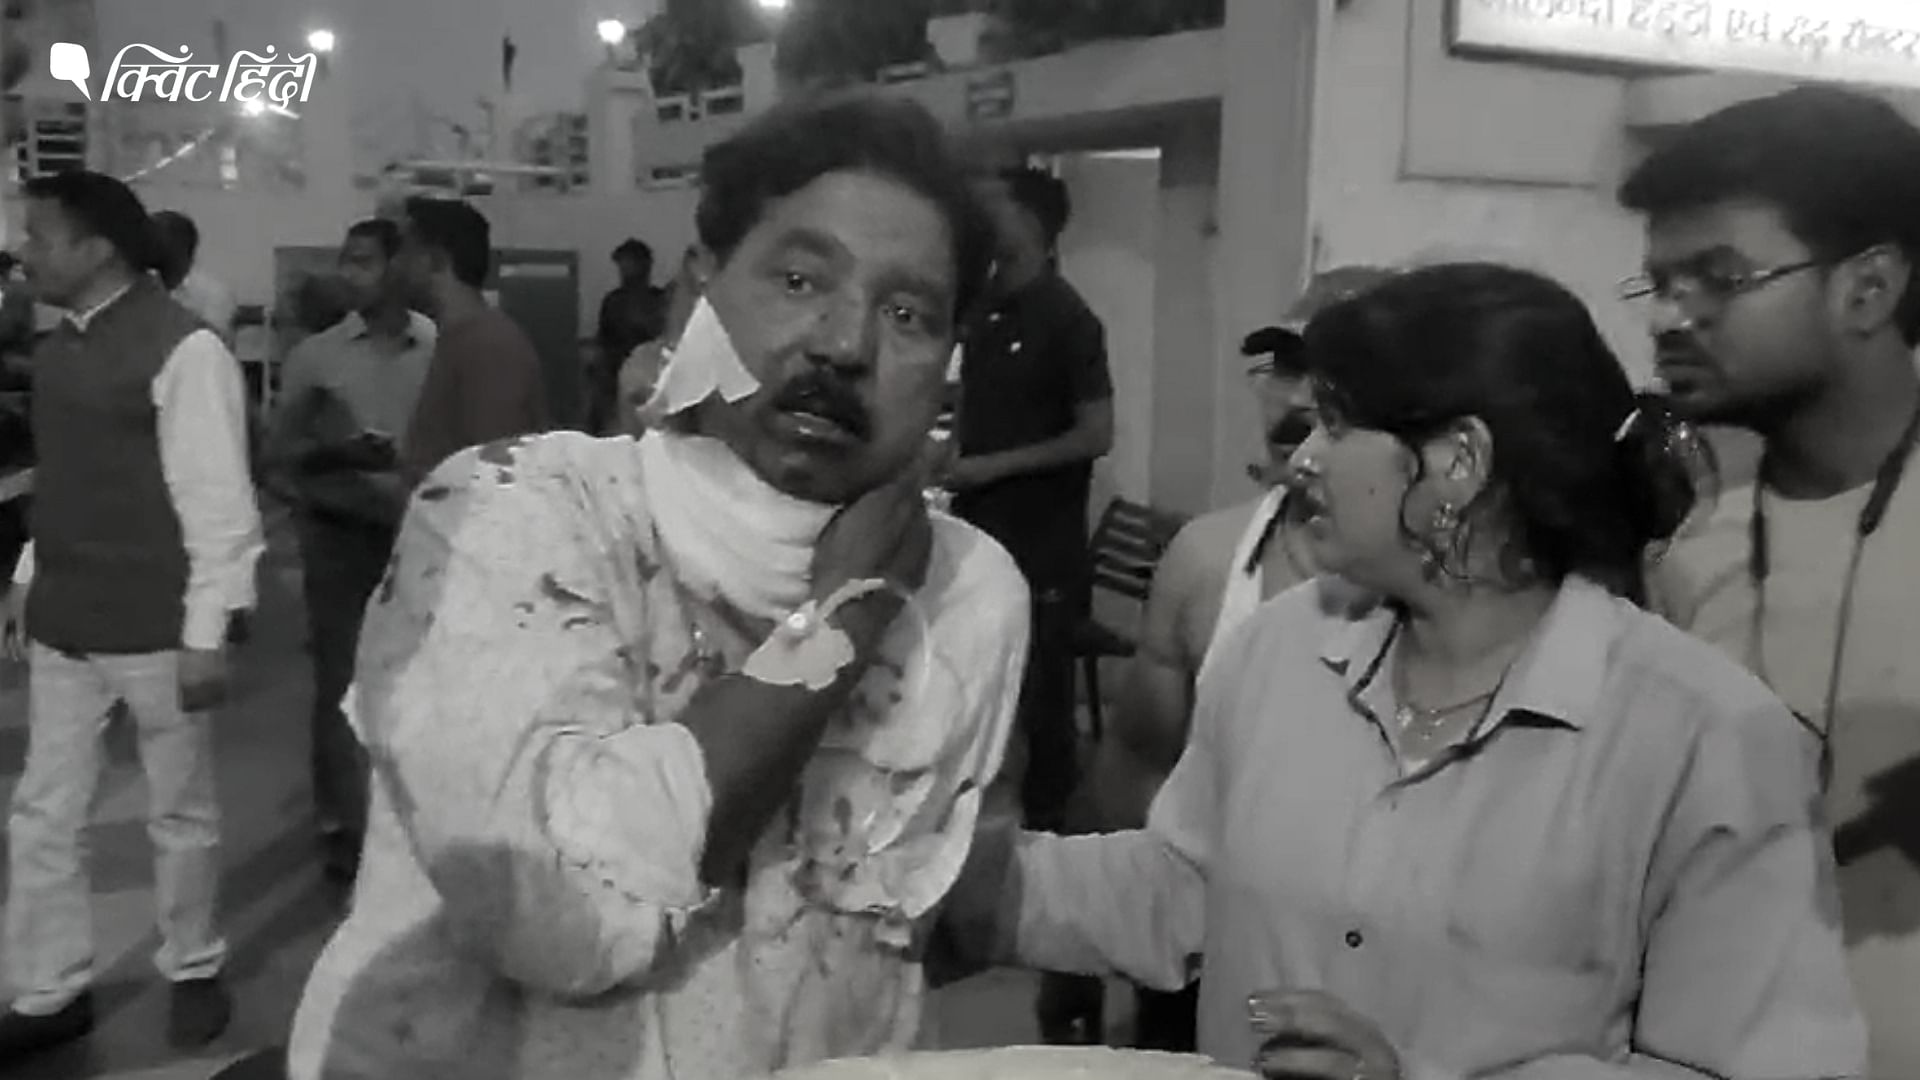 <div class="paragraphs"><p>बिहार: नालंदा में पत्रकार को बदमाशों ने मारी गोली, पत्नी संग बाइक से लौट रहा था घर</p></div>